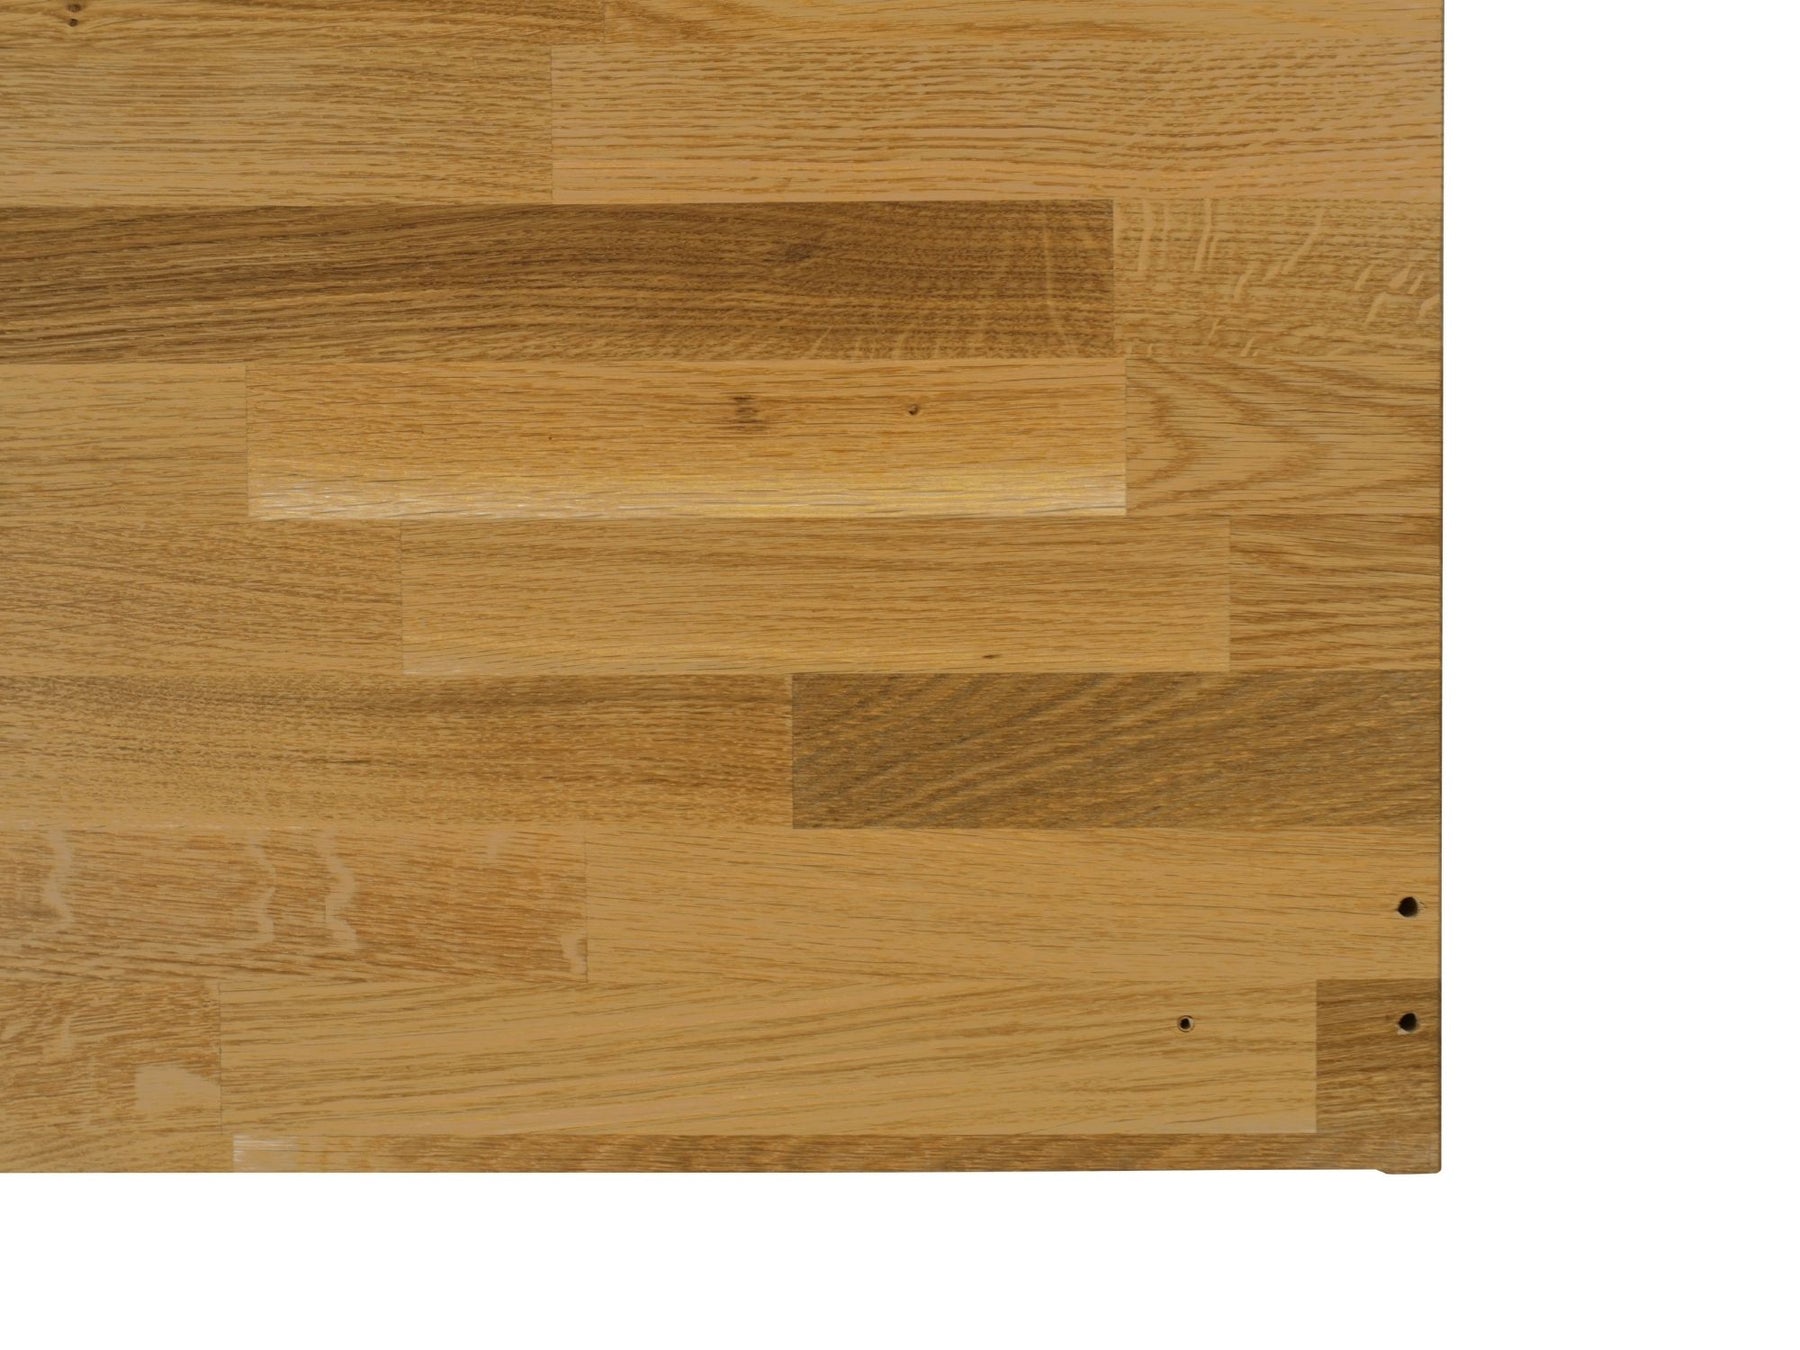 Malm Kommode mit Massivholzdeckplatte aus Eiche Natur geölt Unterseite mit Bohrlöcher Detailbild